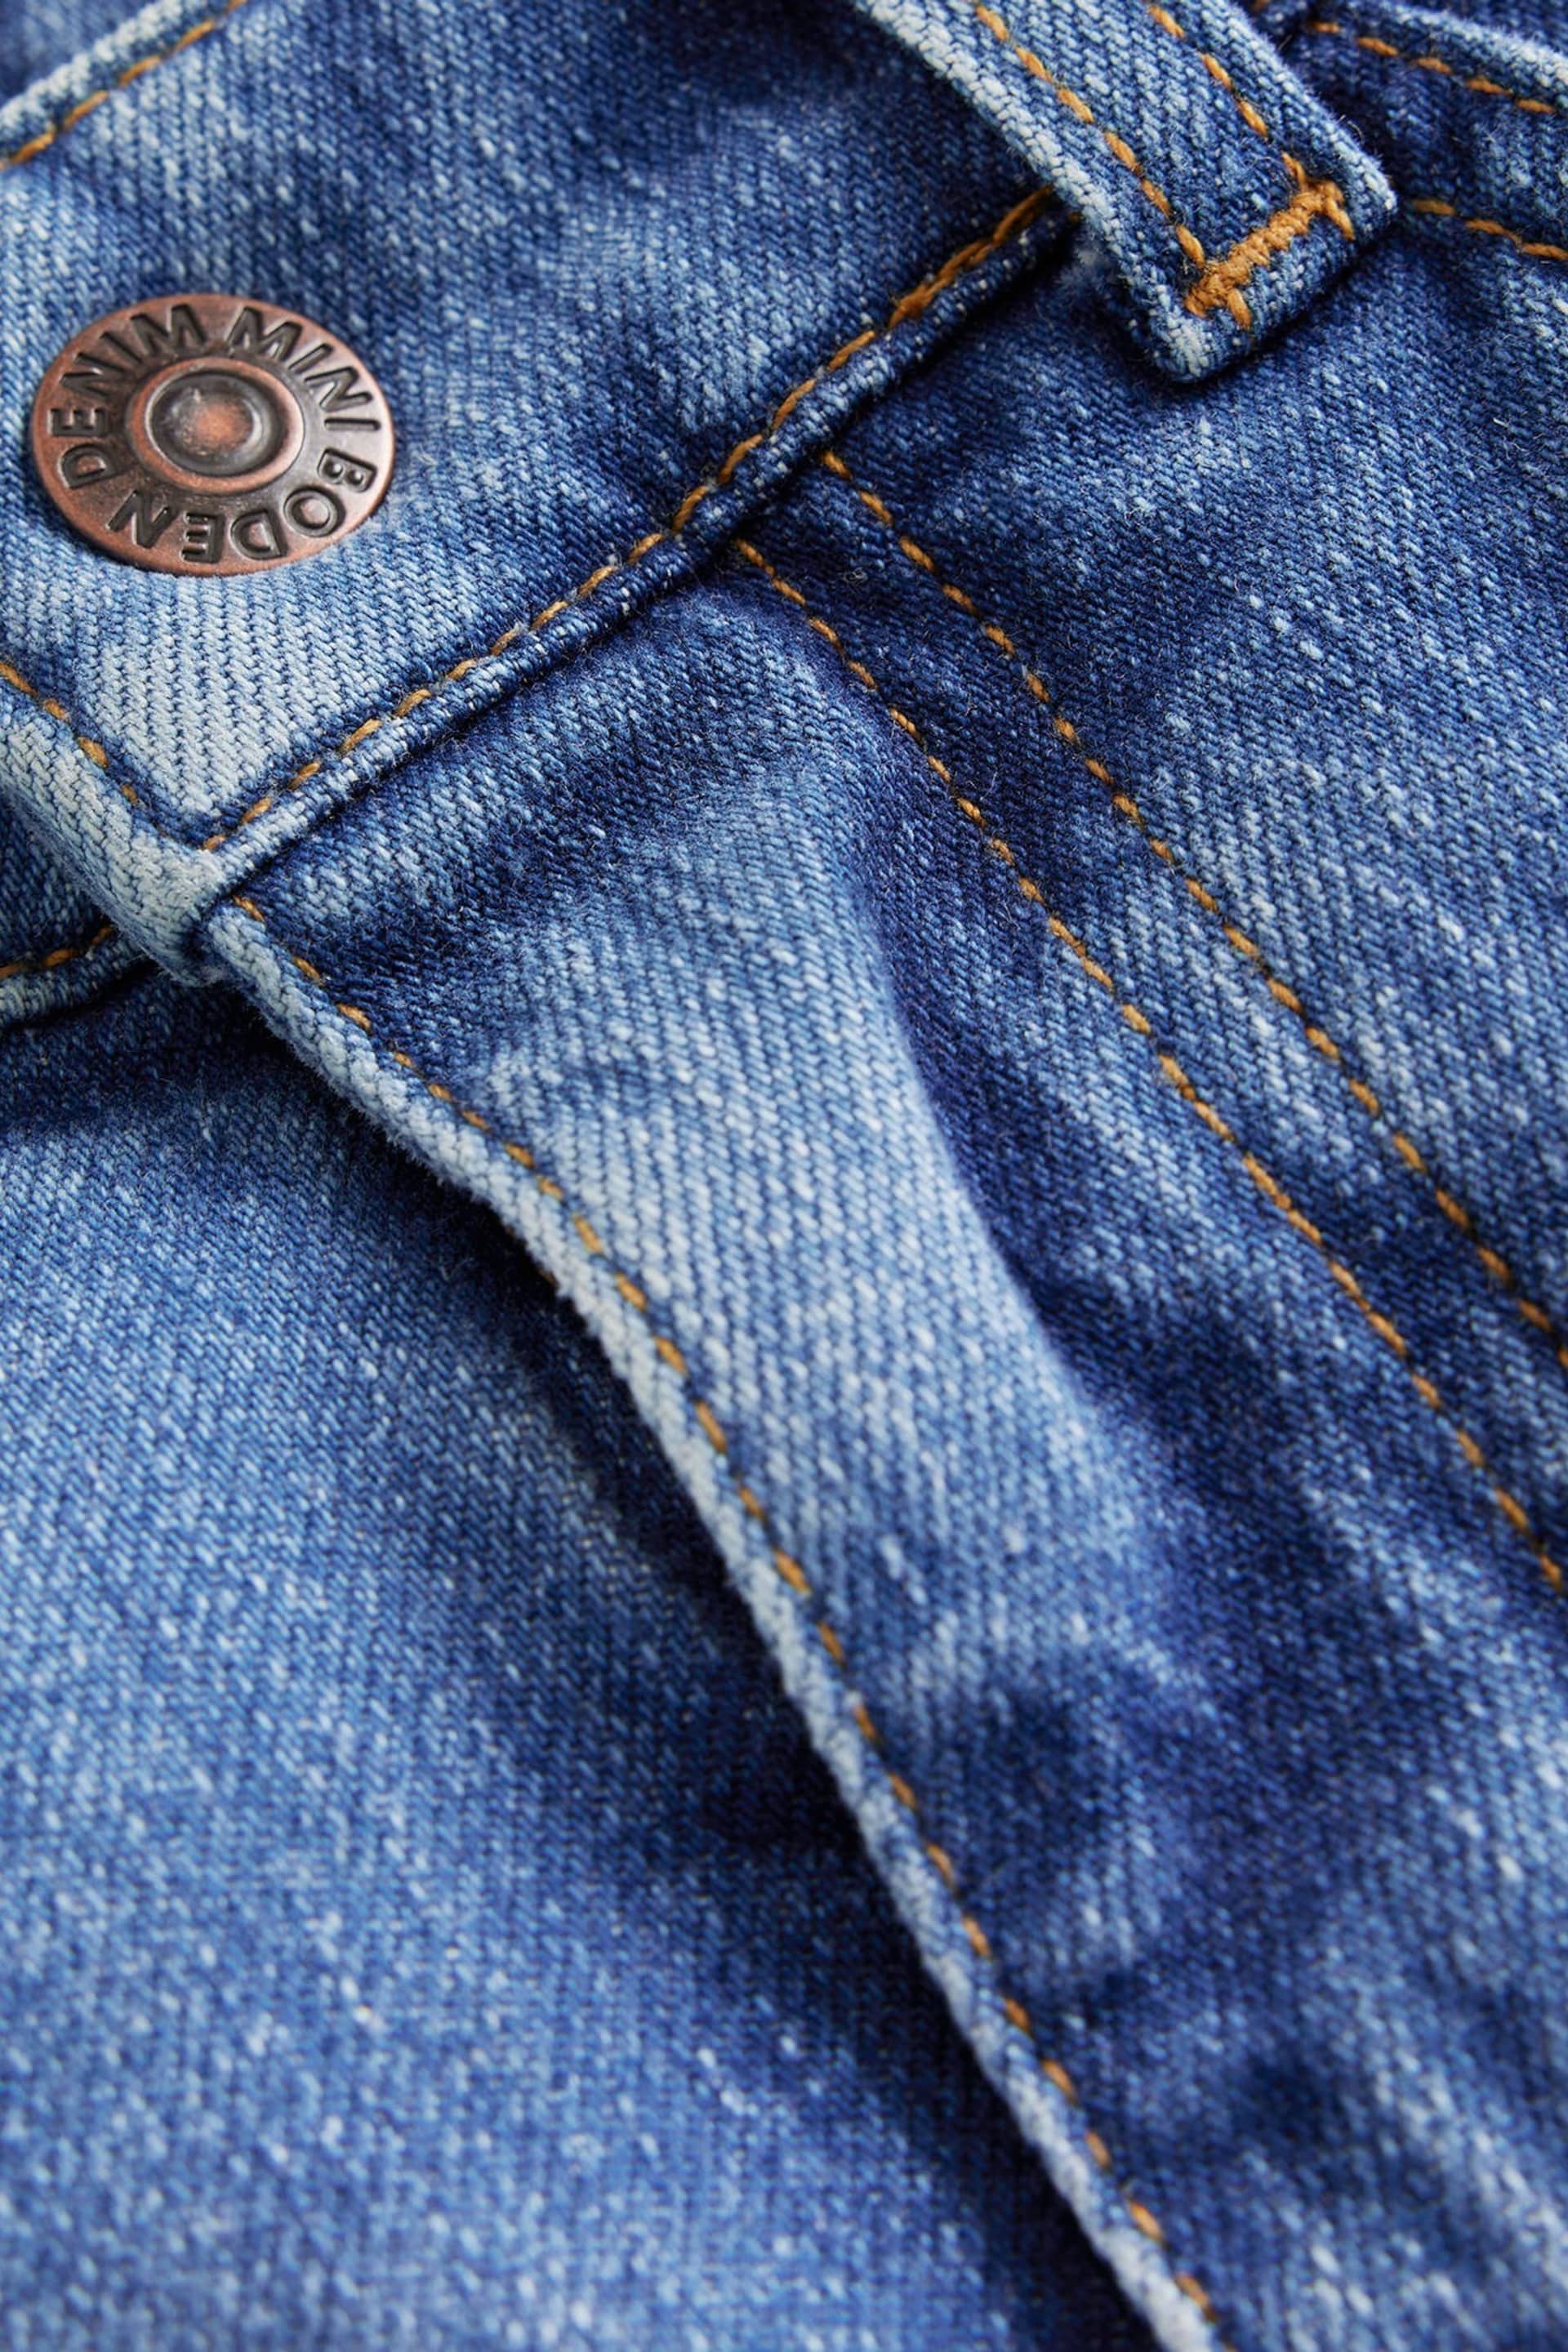 Boden Blue Denim Shorts - Image 3 of 4